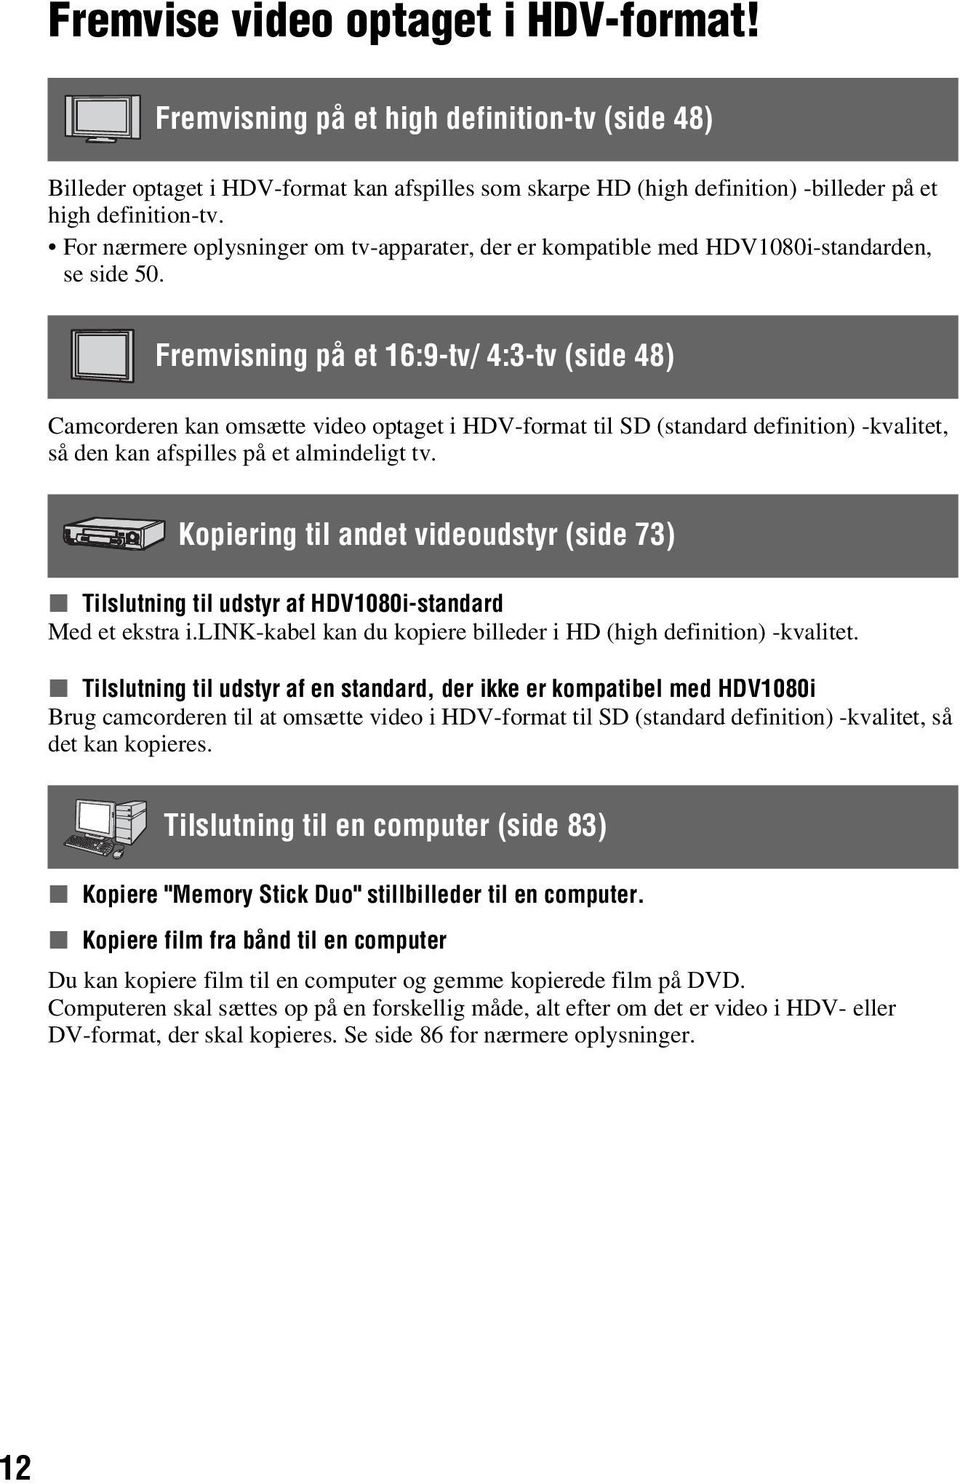 Fremvisning på et 16:9-tv/ 4:3-tv (side 48) Camcorderen kan omsætte video optaget i HDV-format til SD (standard definition) -kvalitet, så den kan afspilles på et almindeligt tv.